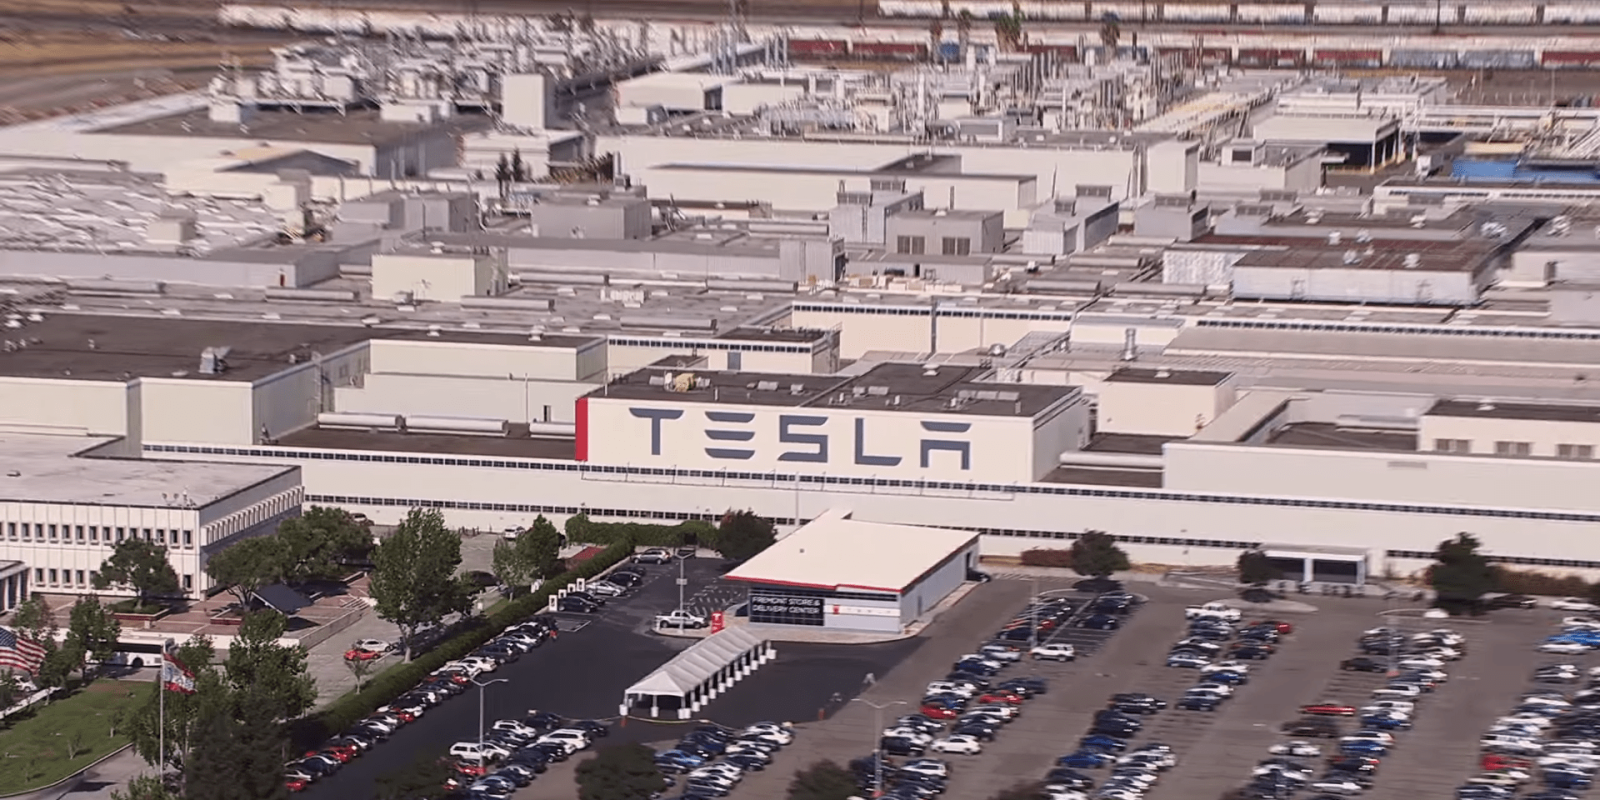 Tesla Fremont factory